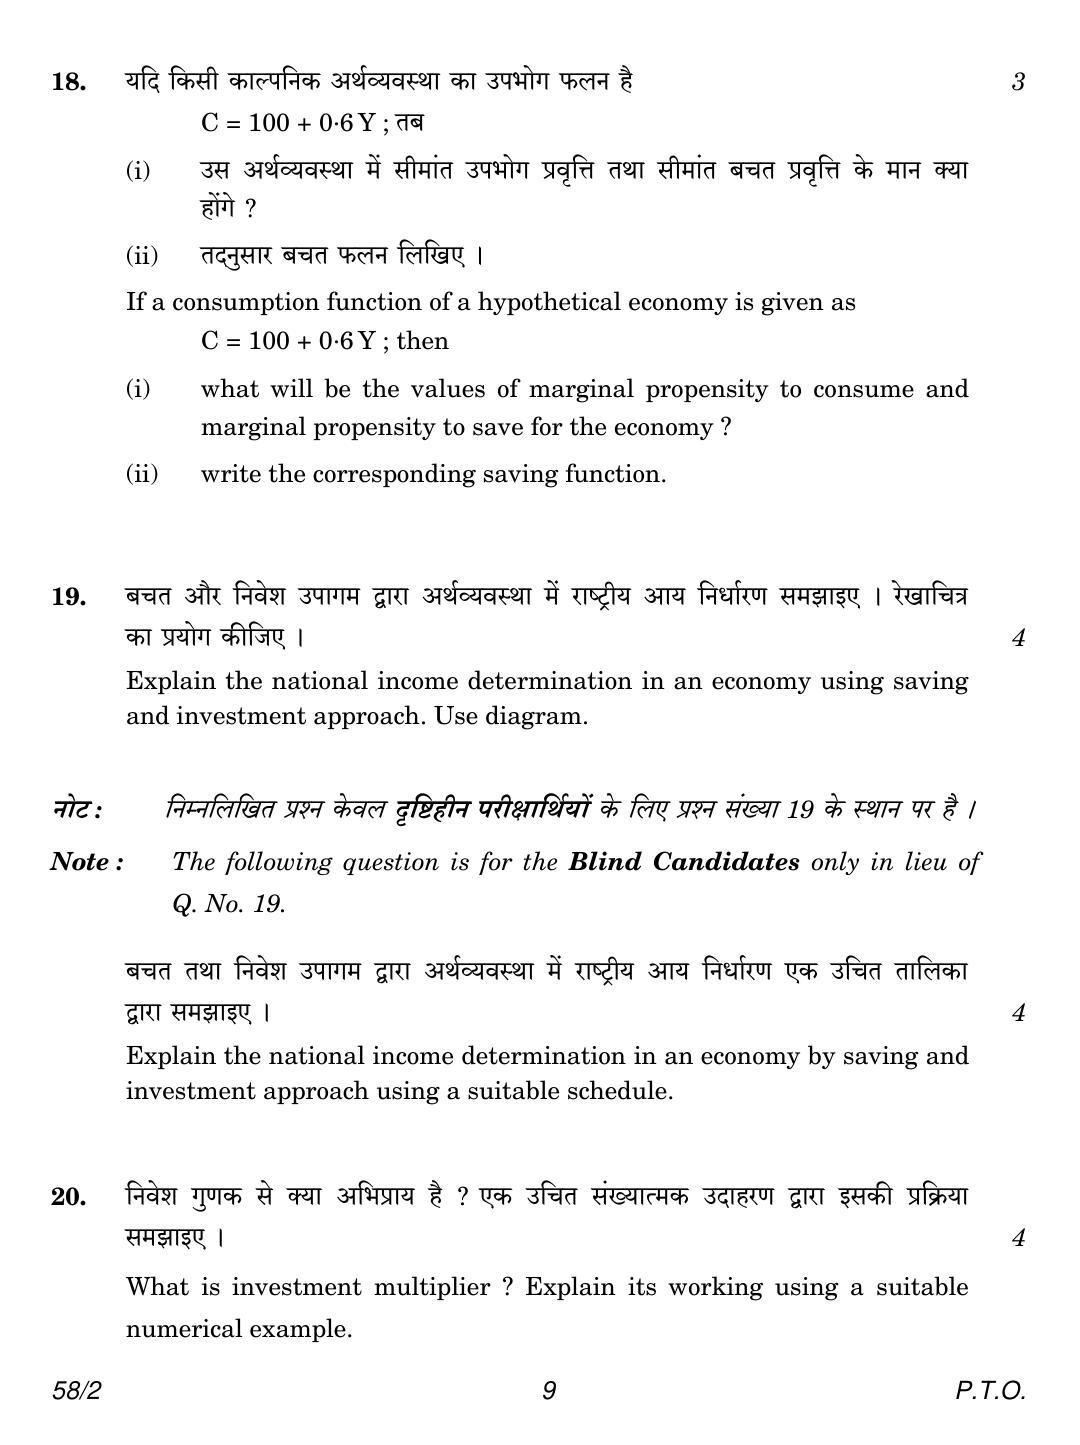 CBSE Class 12 58-2 Economics 2018 Question Paper - Page 9